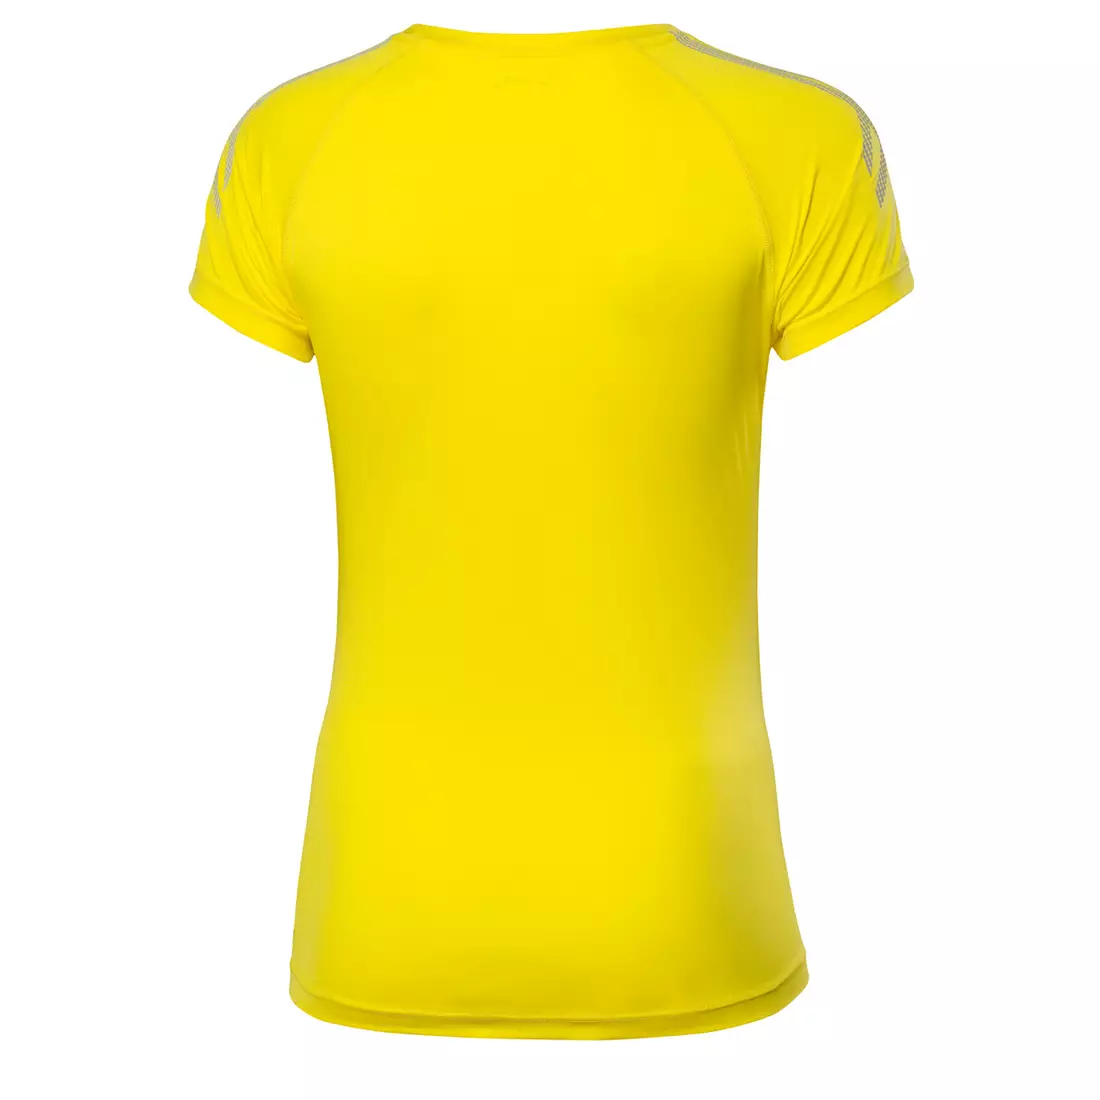 ASICS 339907-0343 TIGER TEE - dámske bežecké tričko, farba: žltá